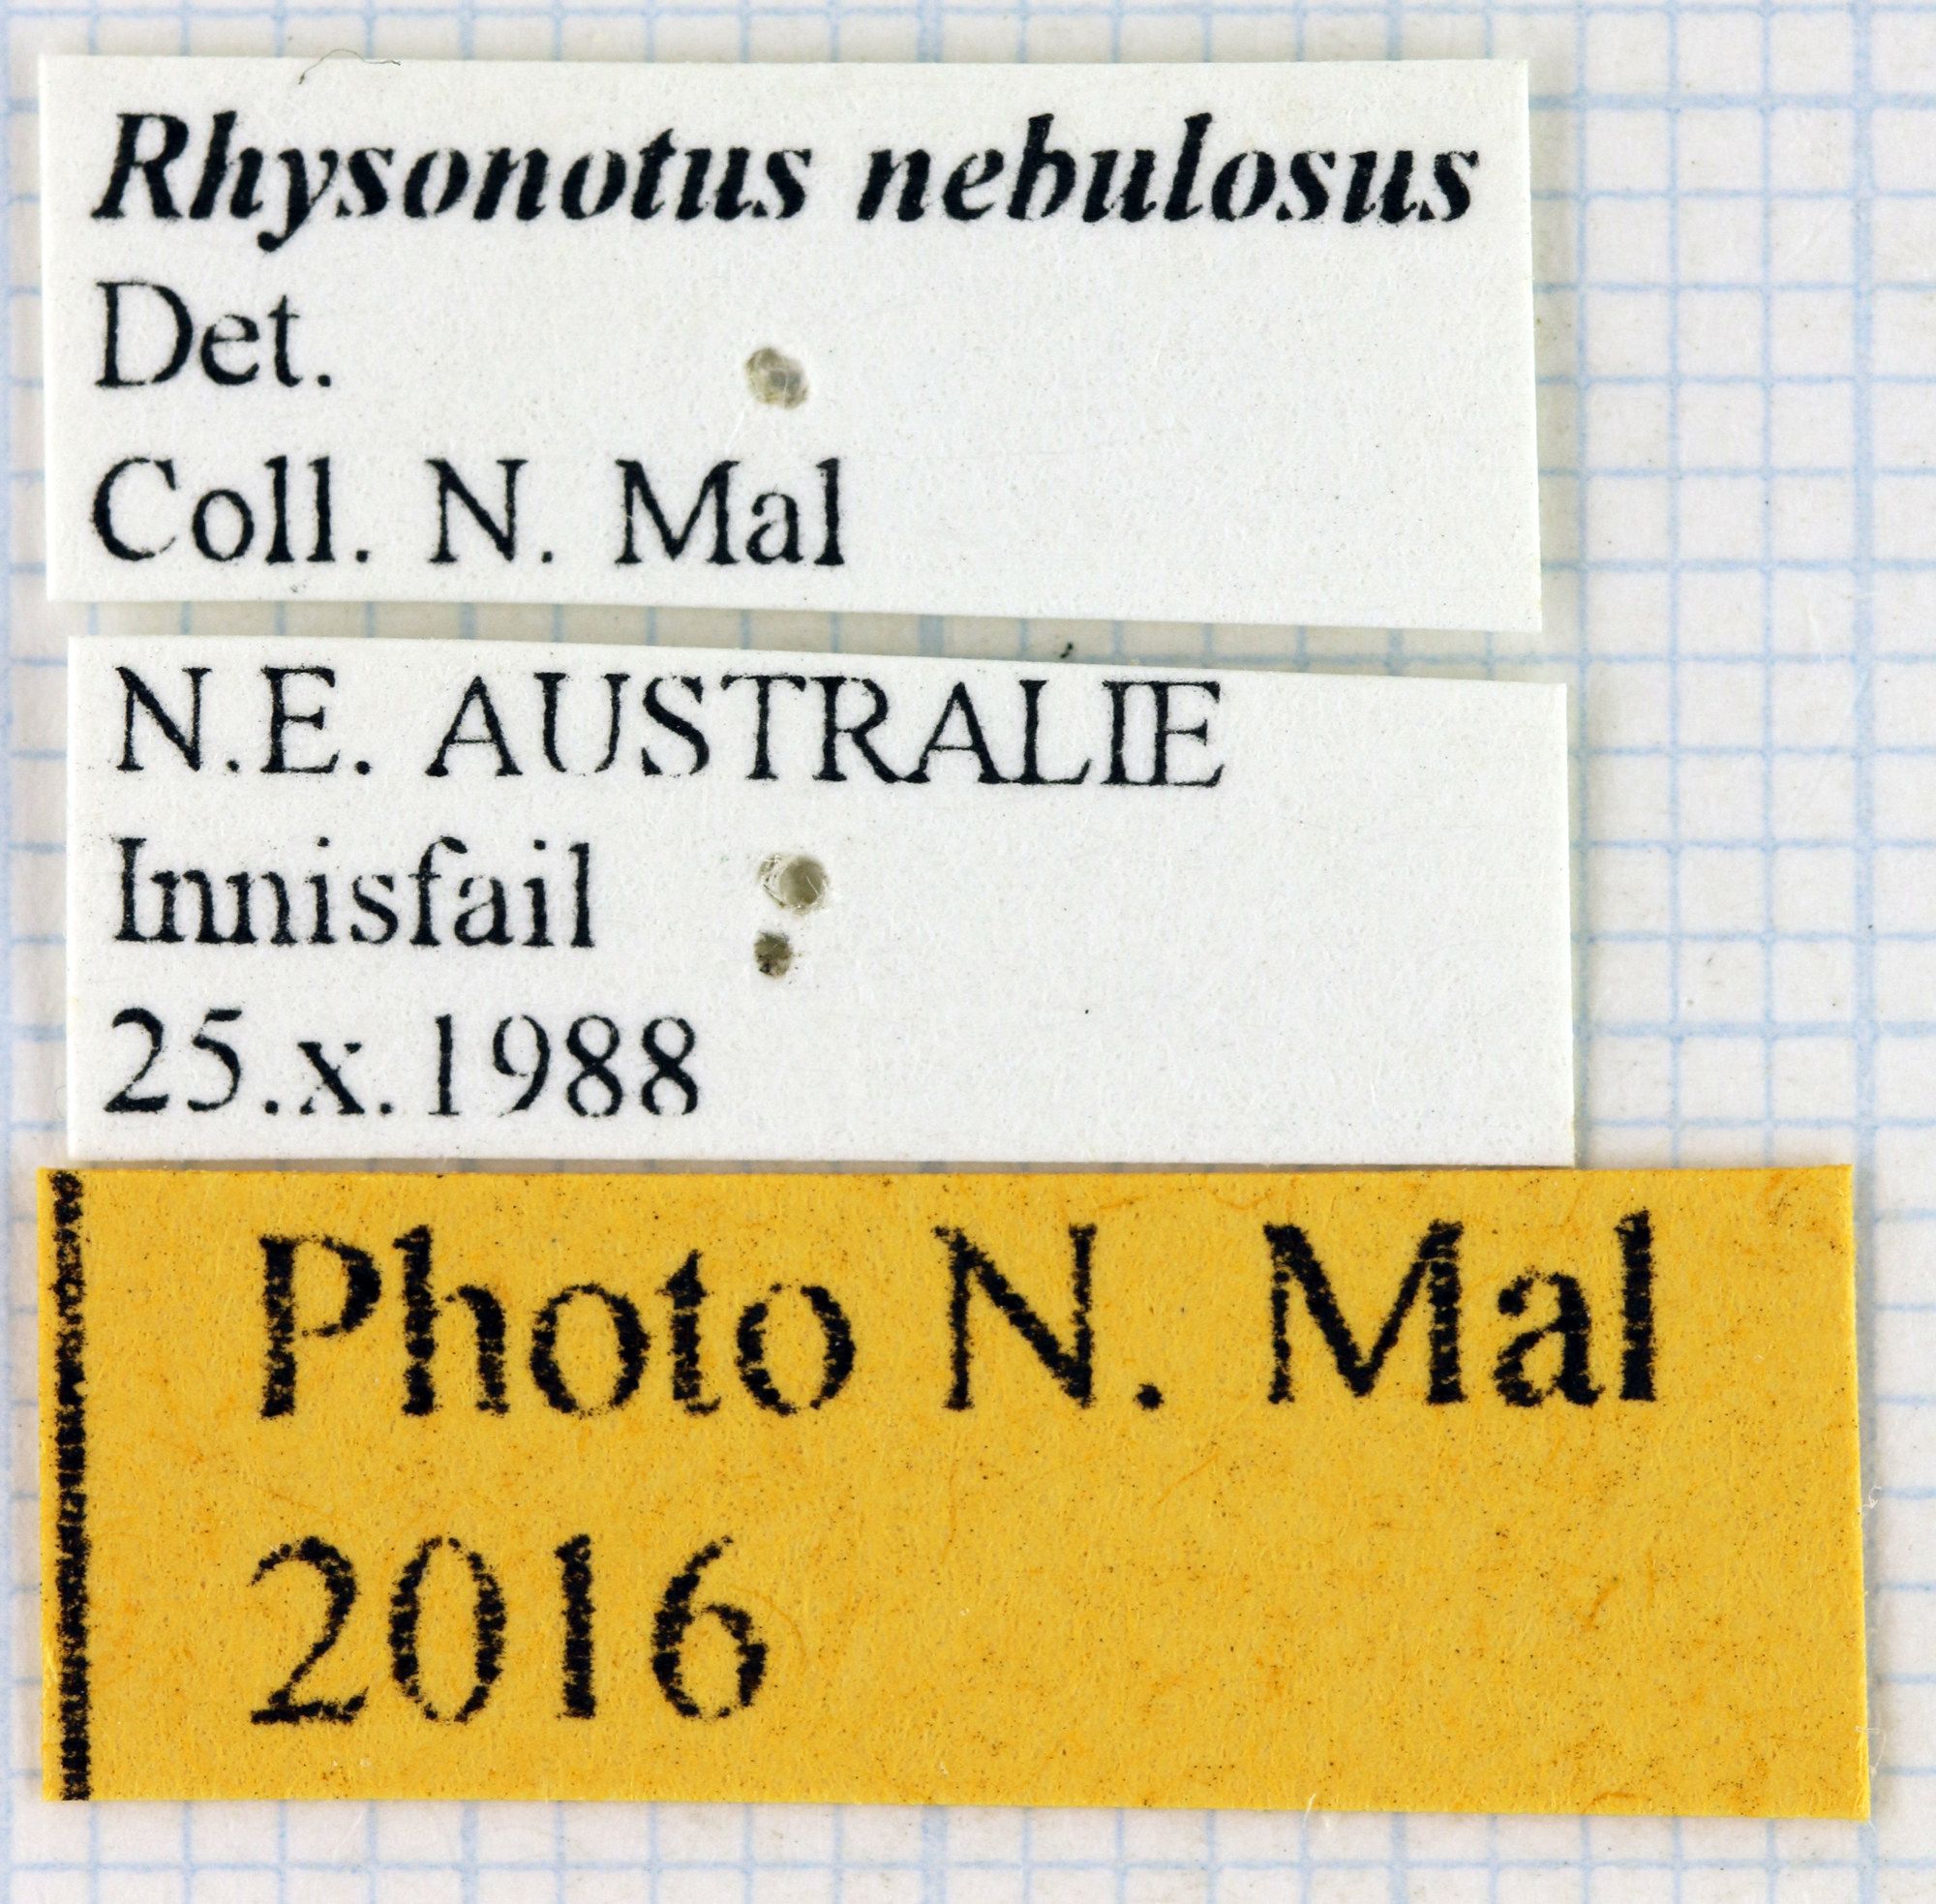 Rhyssonotus nebulosus 68271.jpg